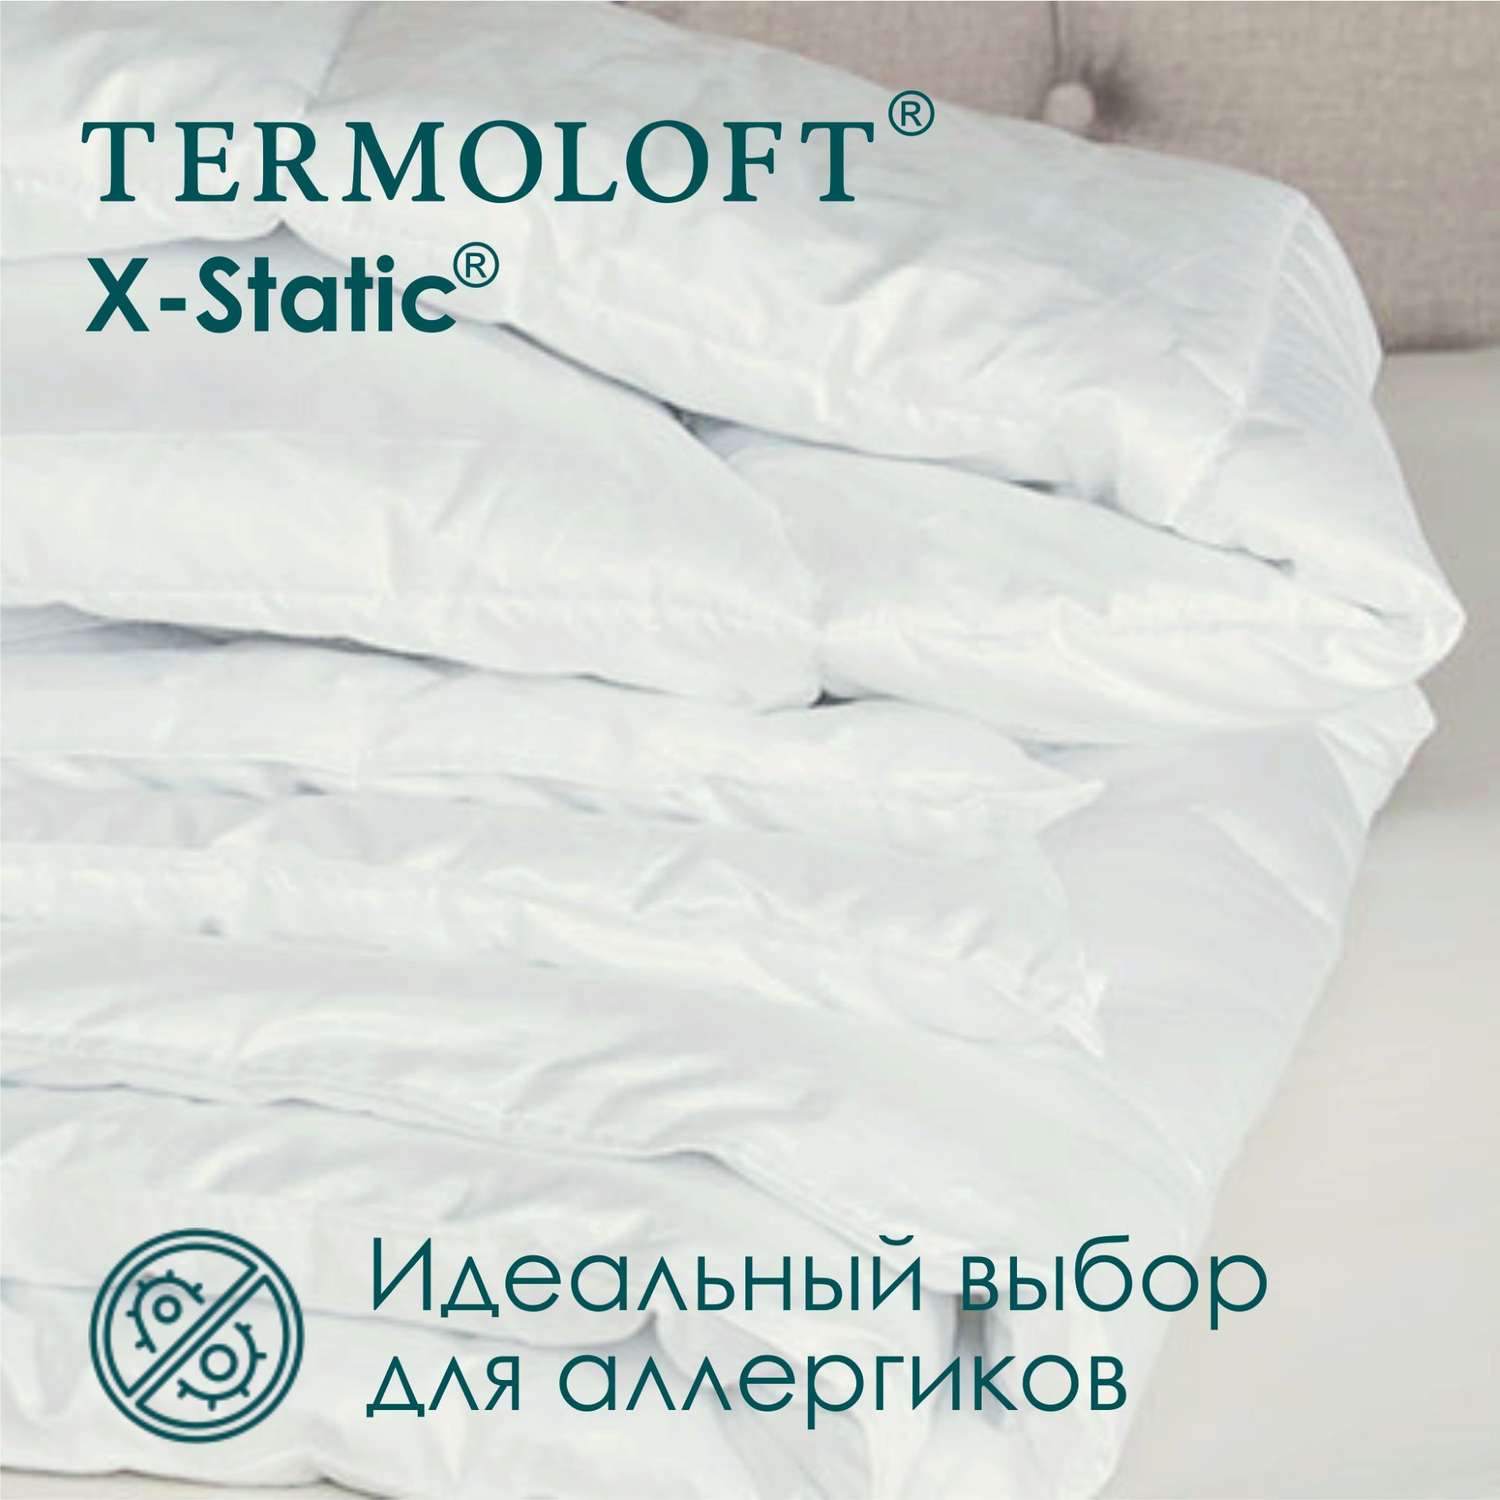 Одеяло Termoloft X-Static с волокнами серебра 220х200 - фото 2